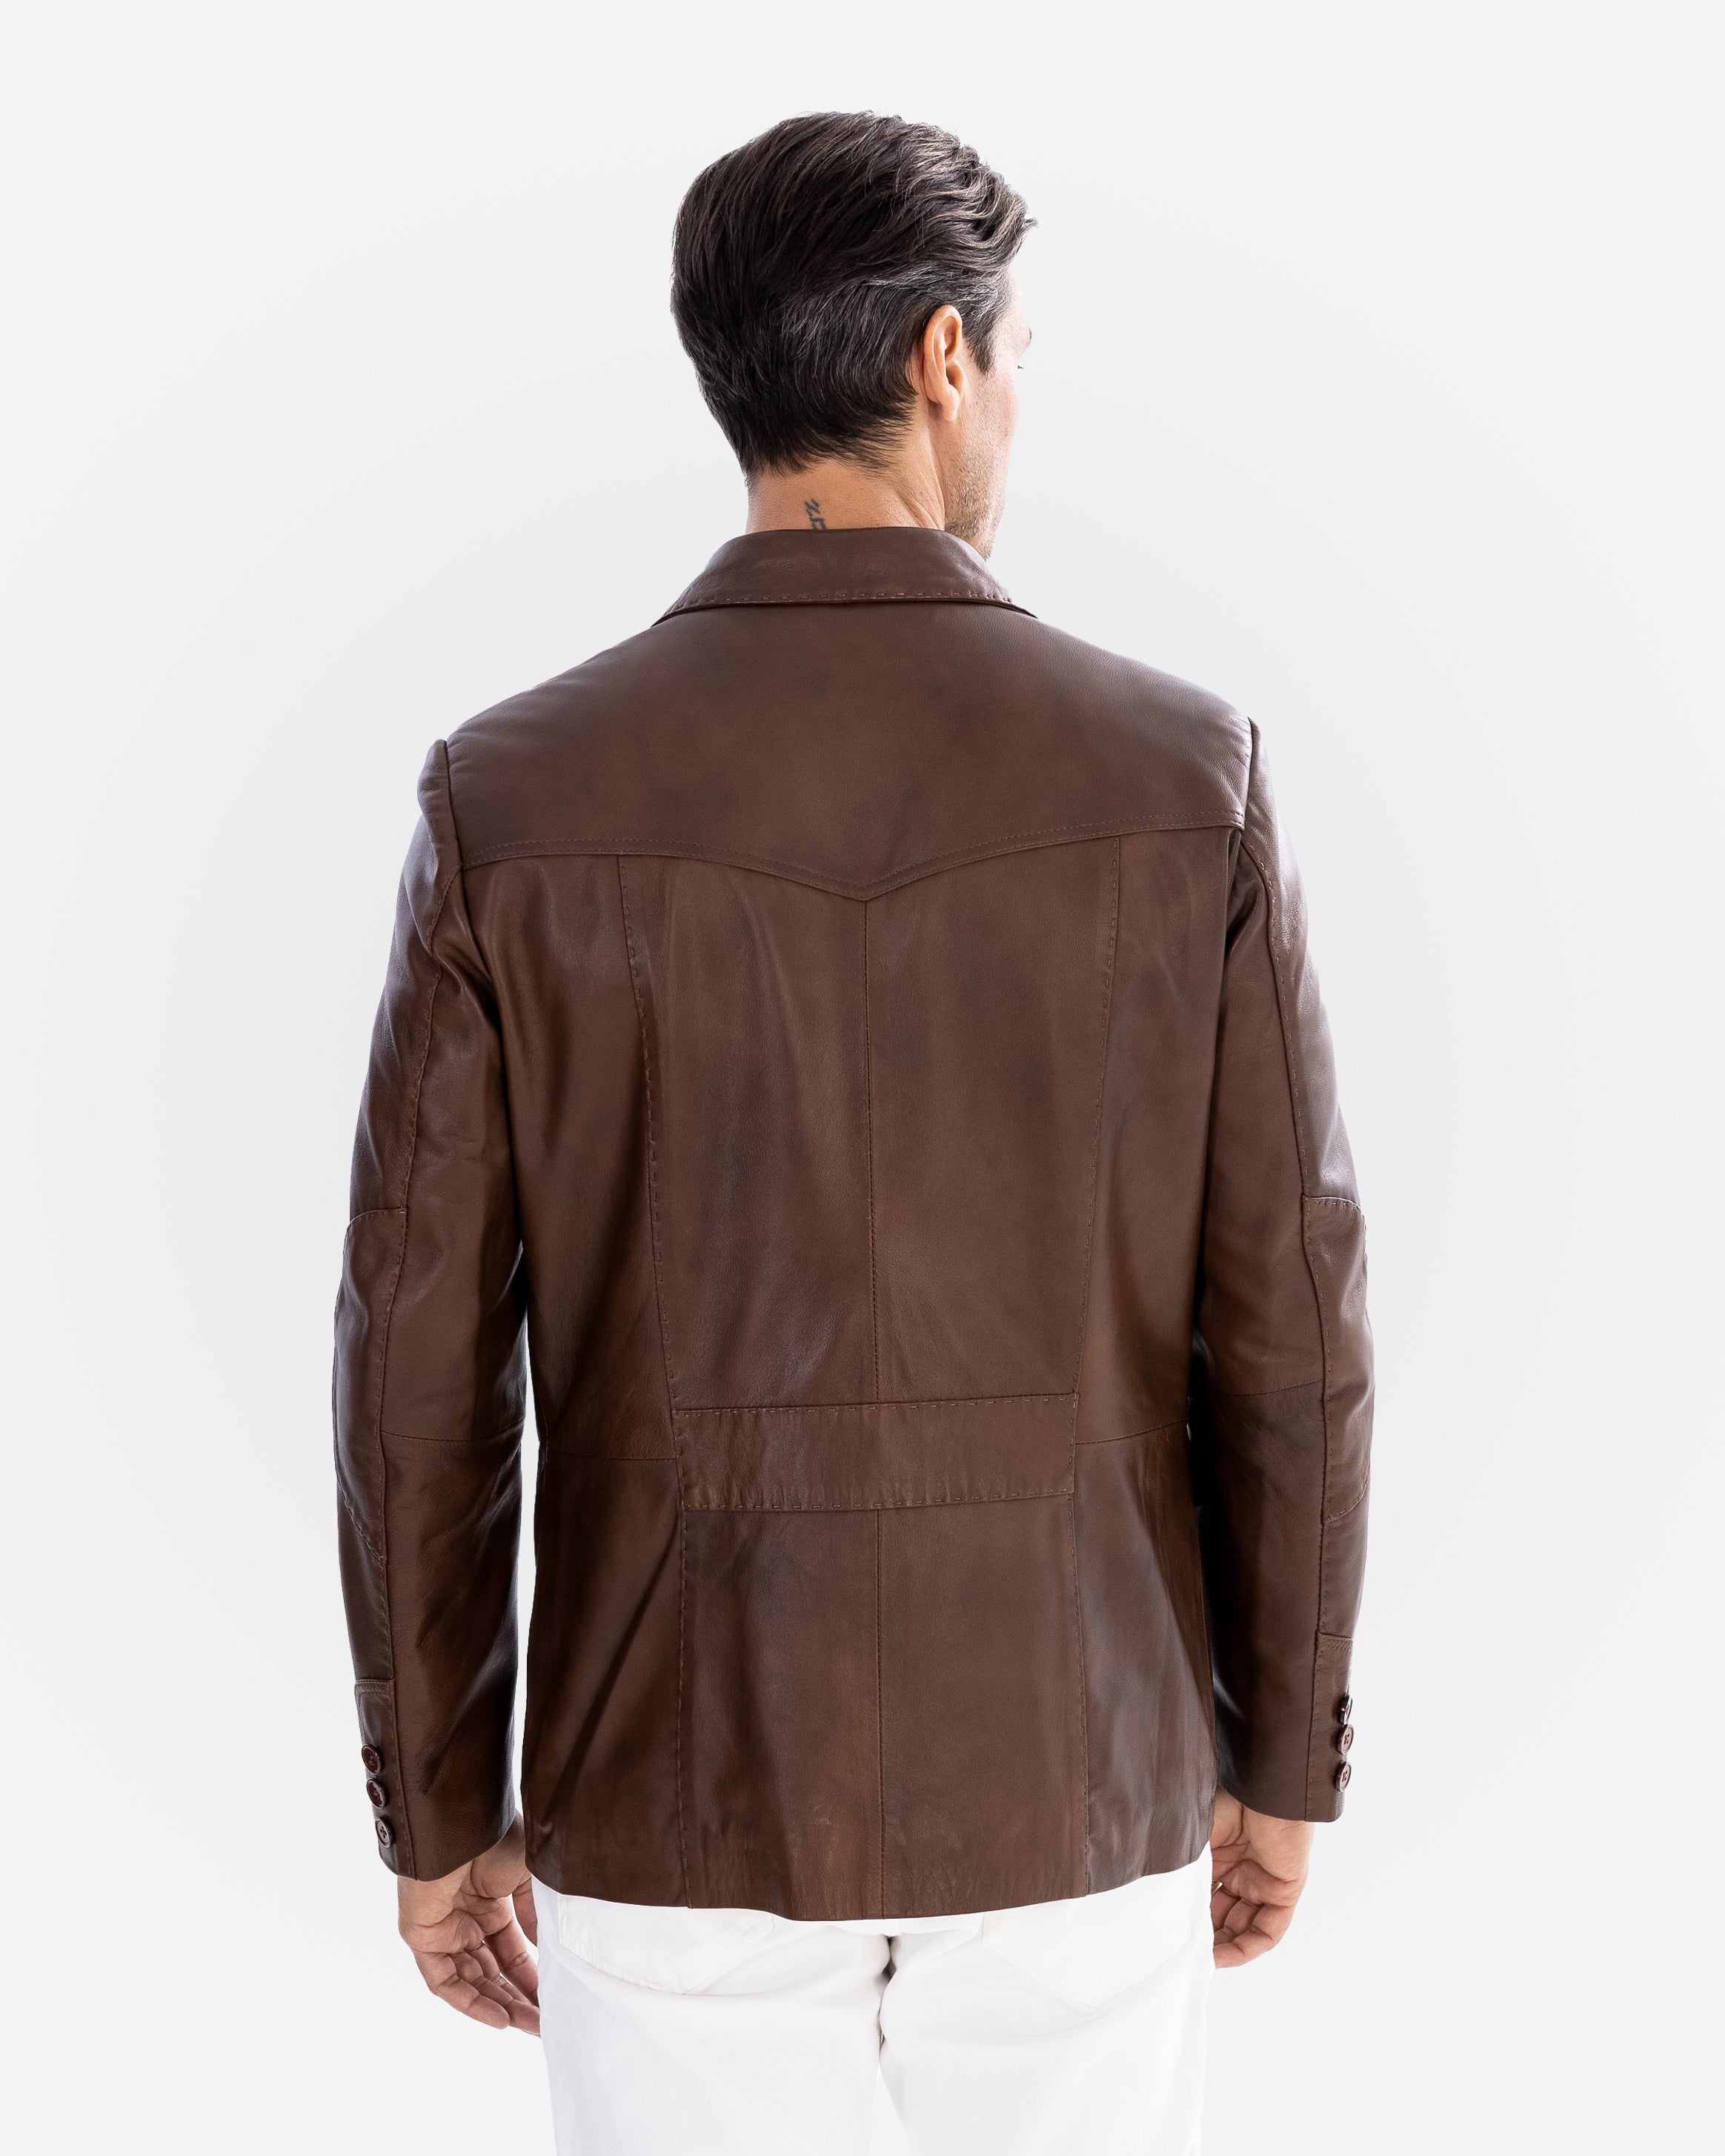 Mencia Leather Jacket